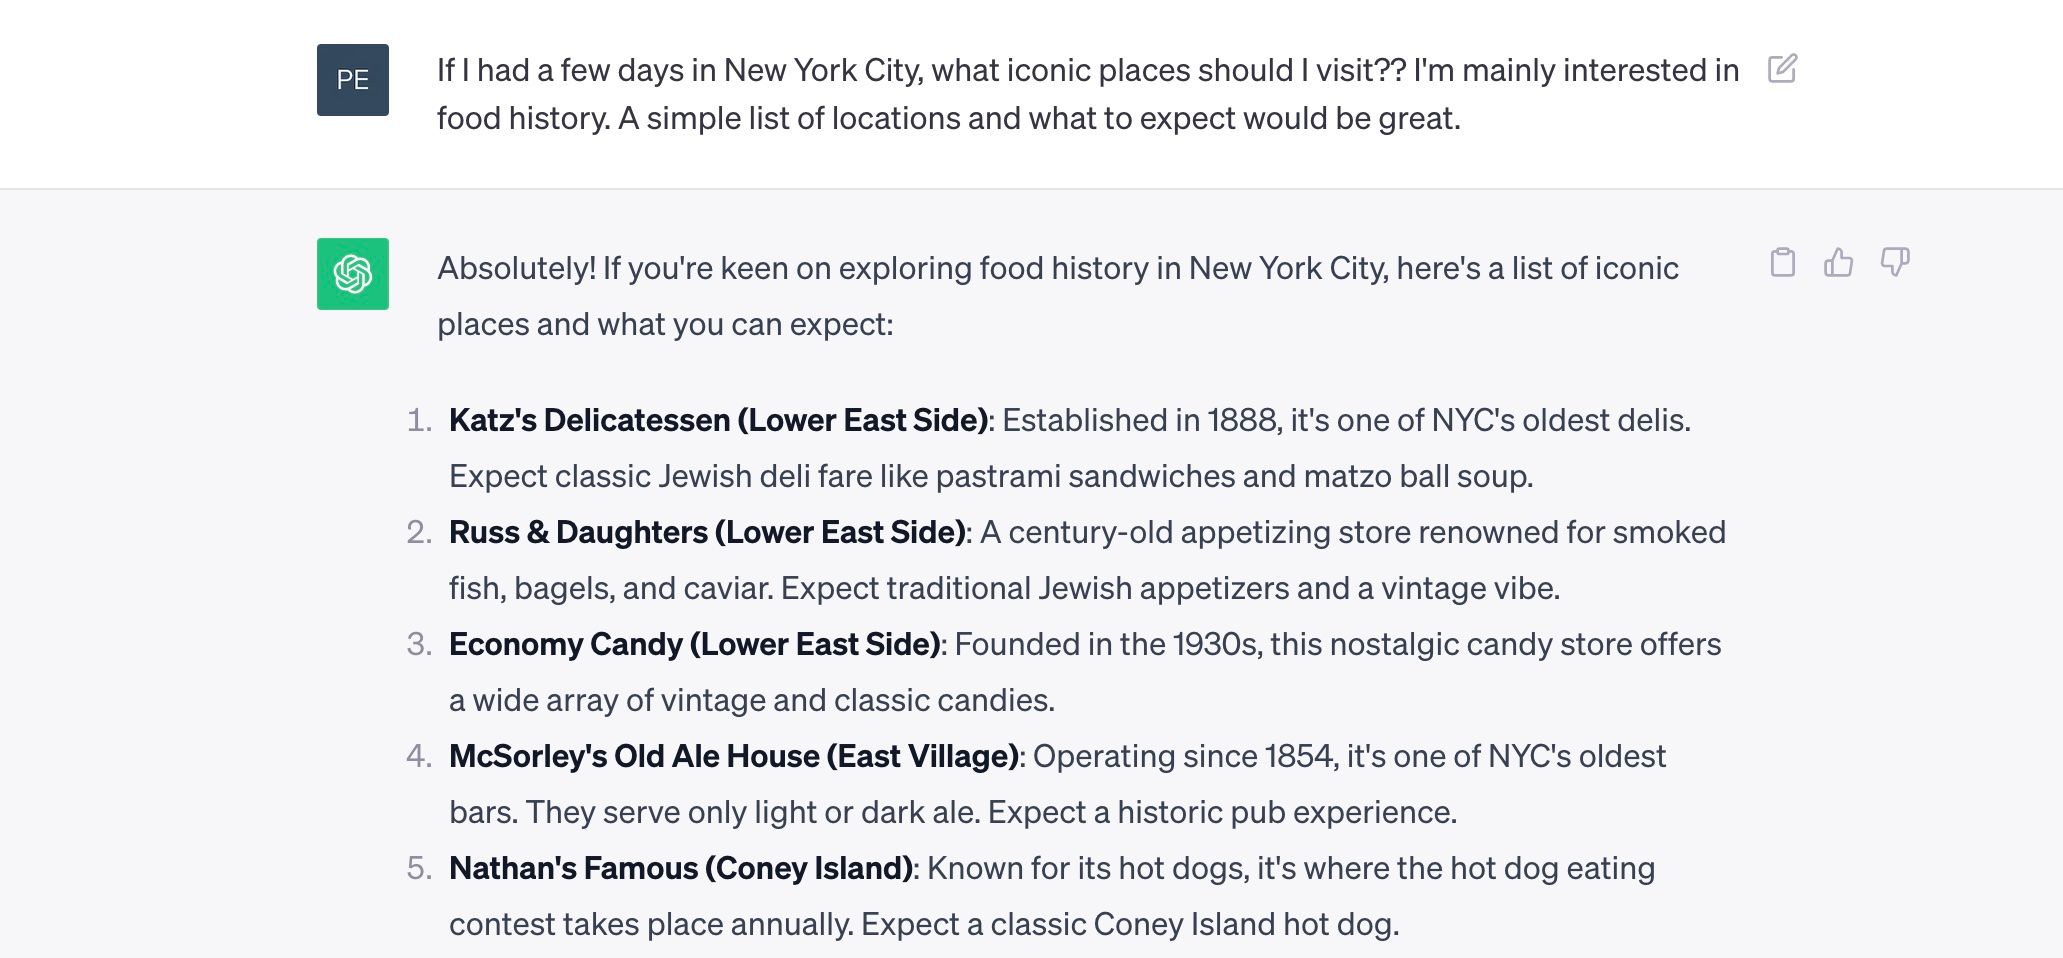 درخواست از ChatGPT برای چند مکان نمادین برای بازدید در نیویورک